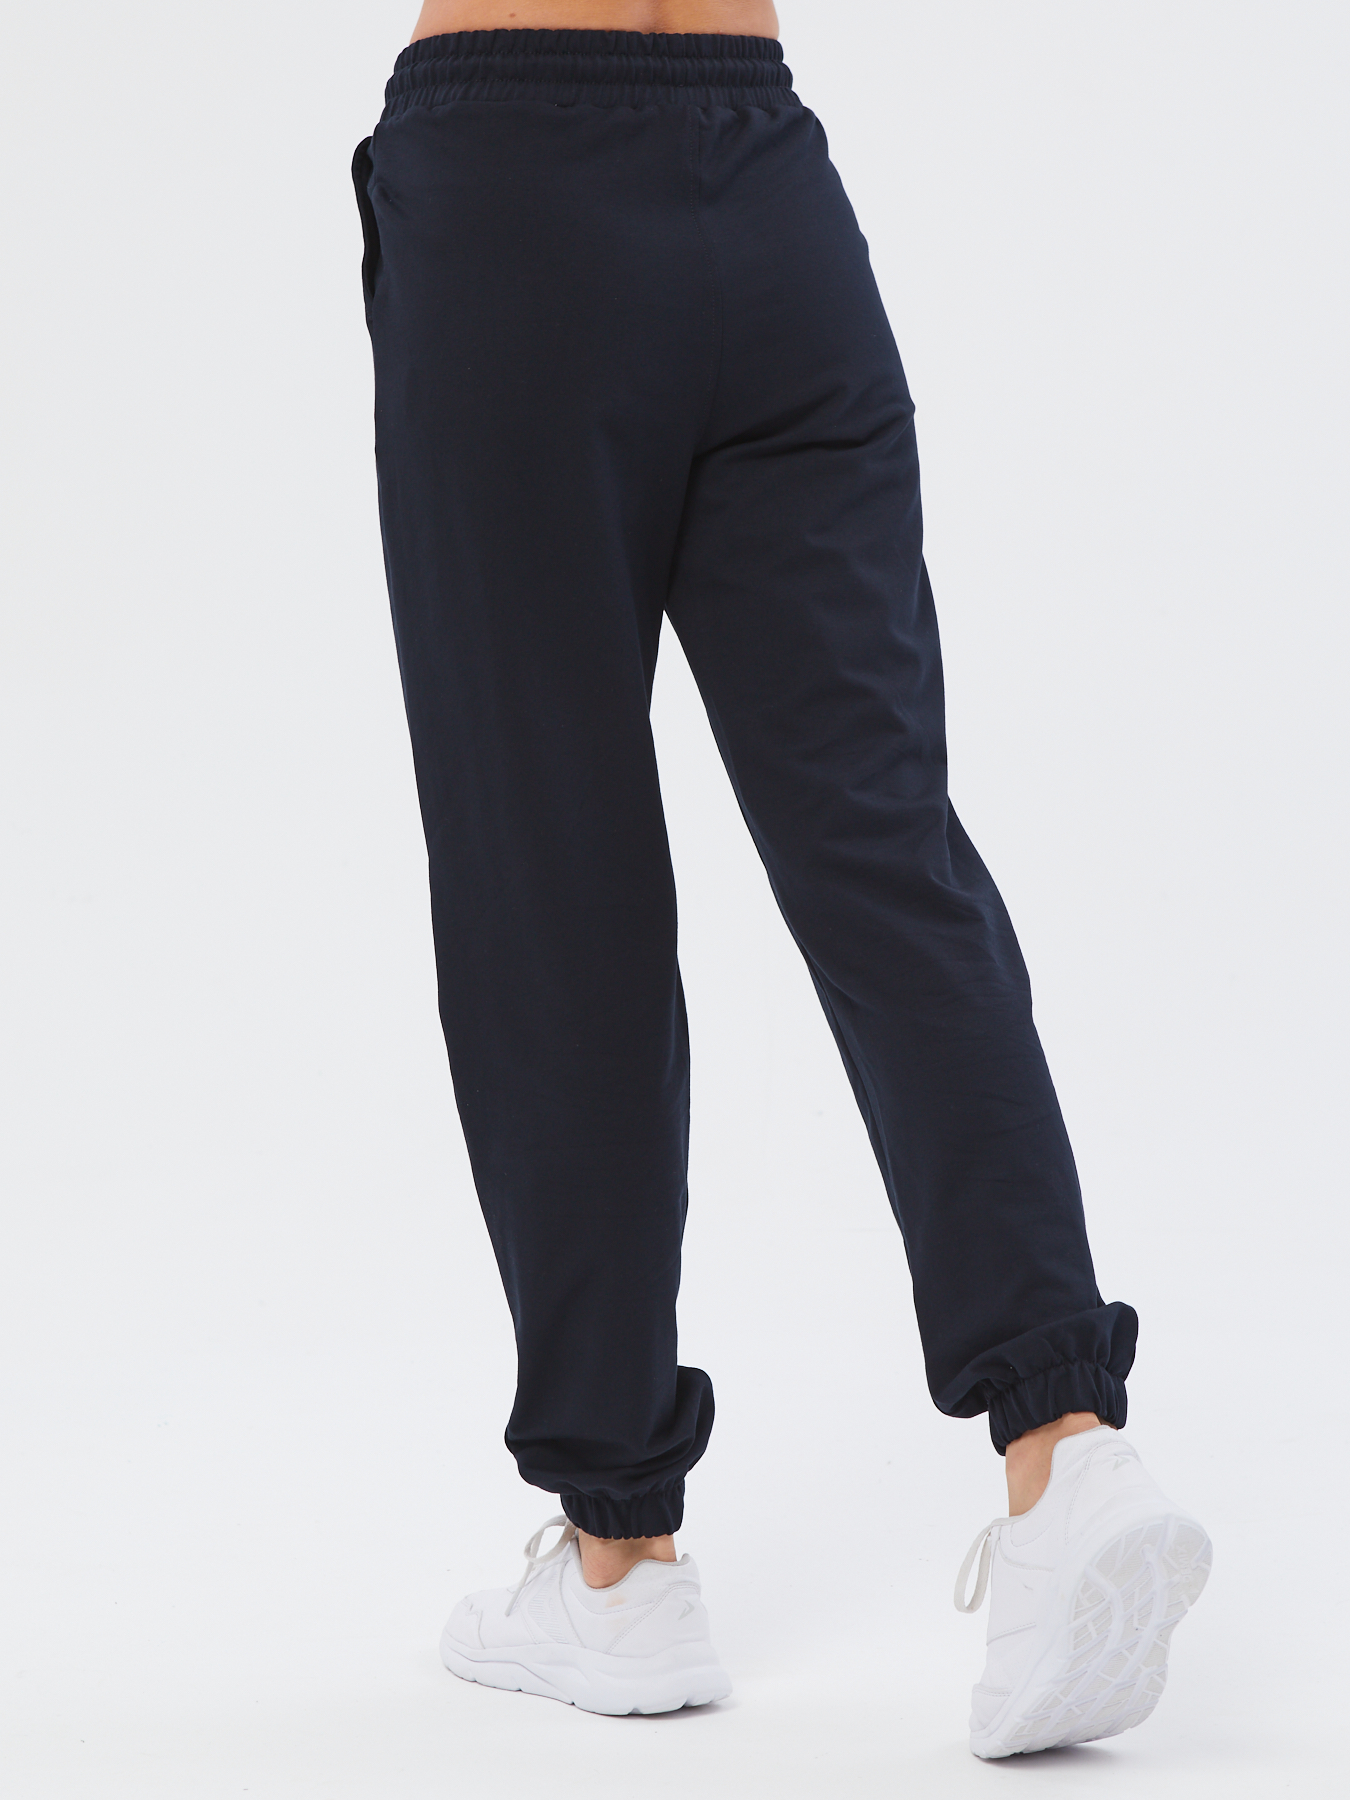 Спортивные брюки женские Still-expert б5 синие 46/165-180